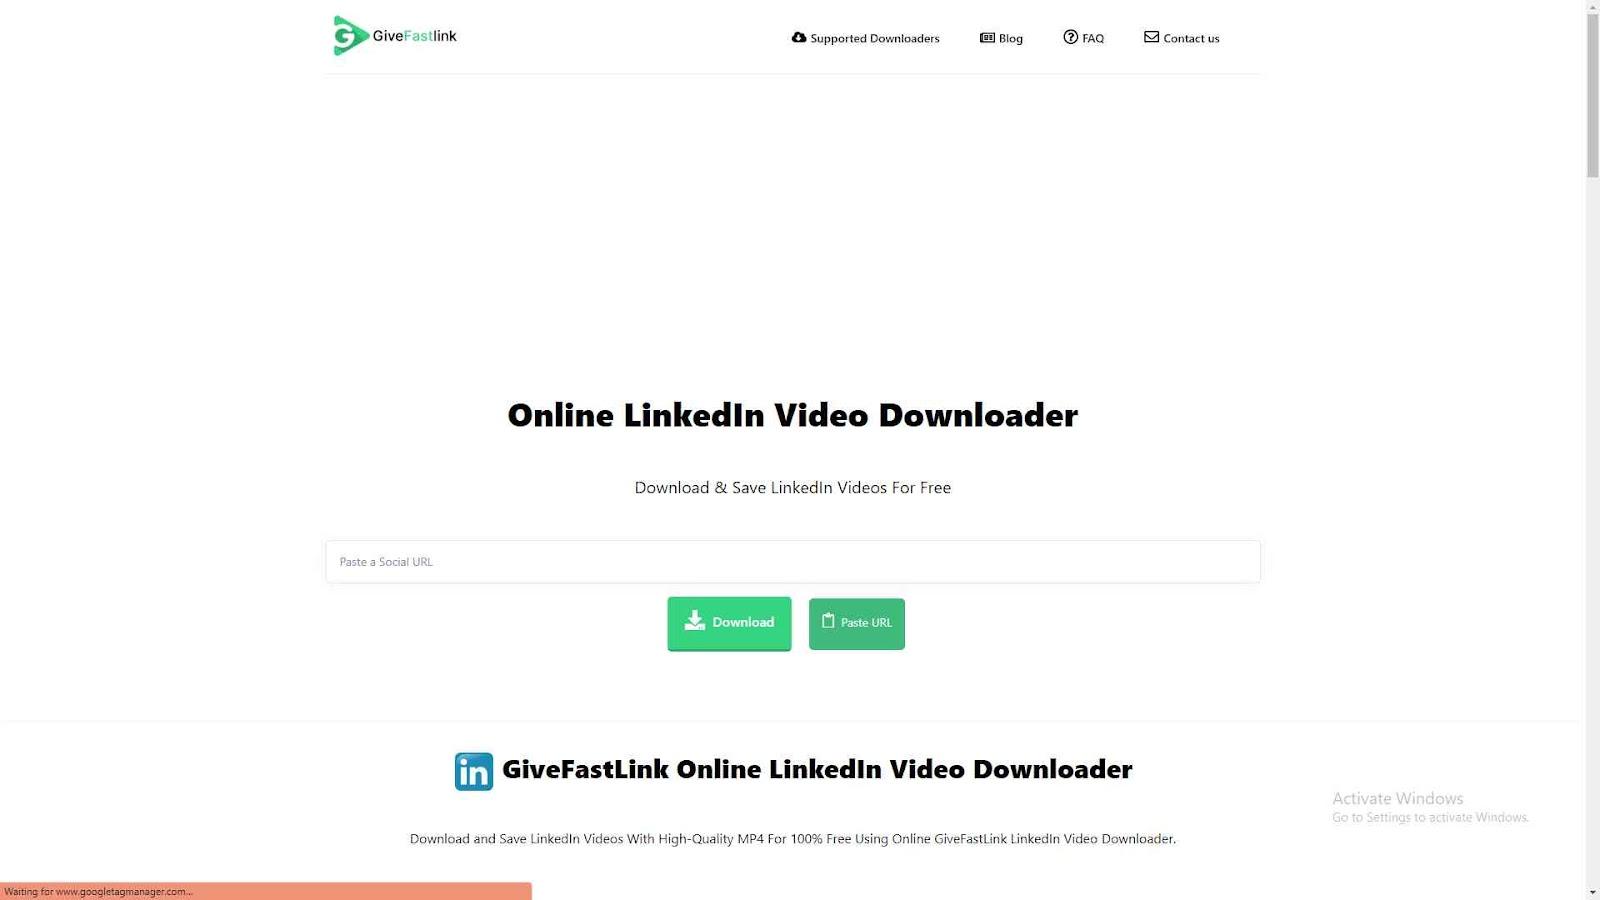 GiveFastLink Online LinkedIn Video Downloader